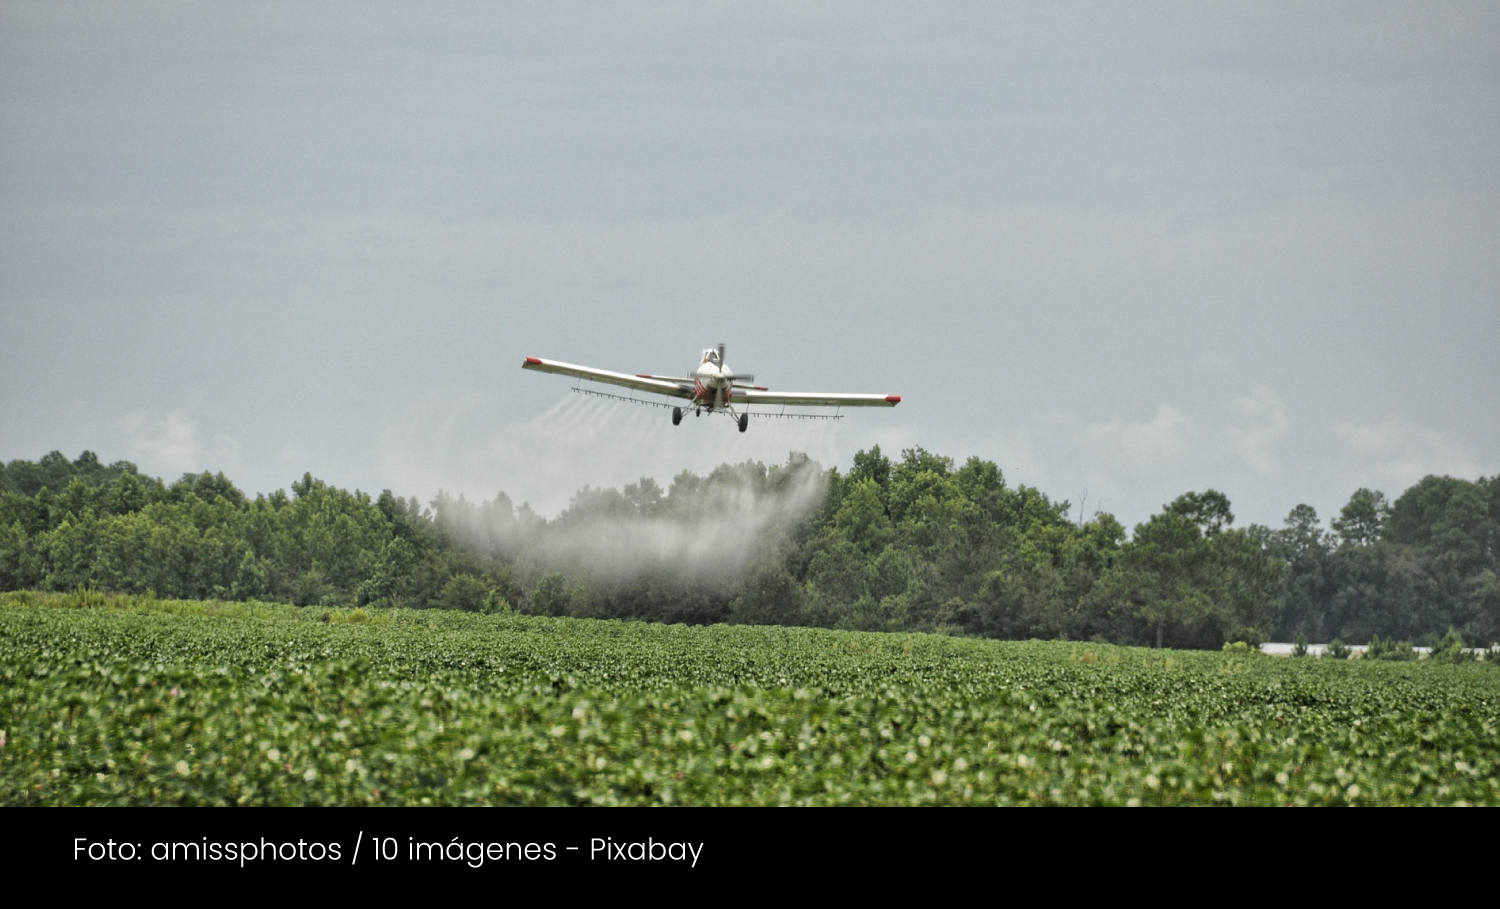 Aspersión con glifosato, regulación de pesticidas y salud pública - Cider | Uniandes